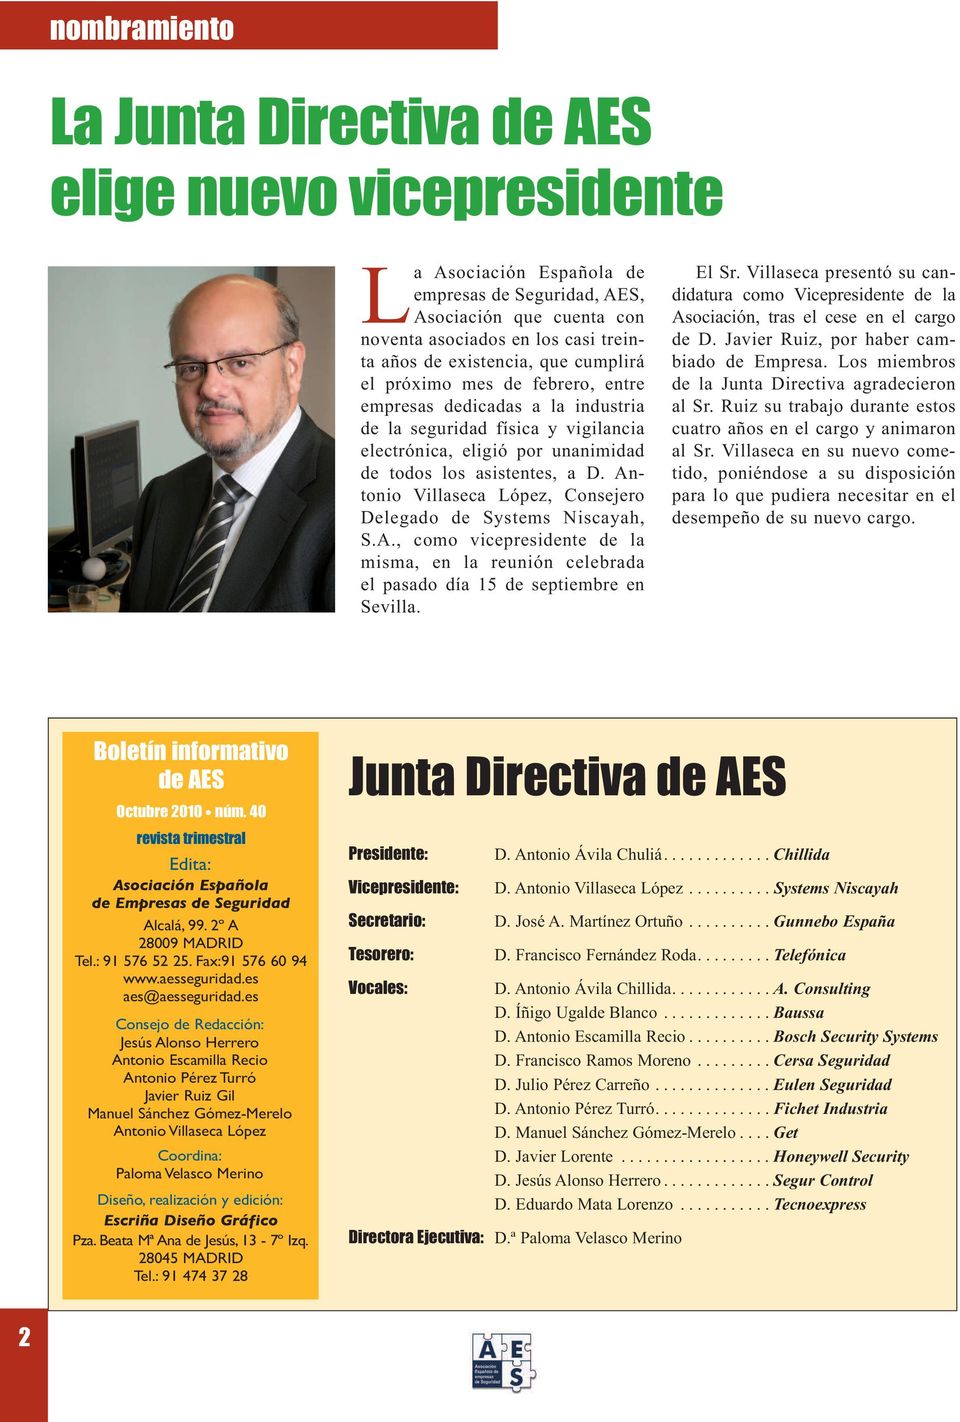 Antonio Villaseca López, Consejero Delegado de Systems Niscayah, S.A., como vicepresidente de la misma, en la reunión celebrada el pasado día 15 de septiembre en Sevilla. El Sr.